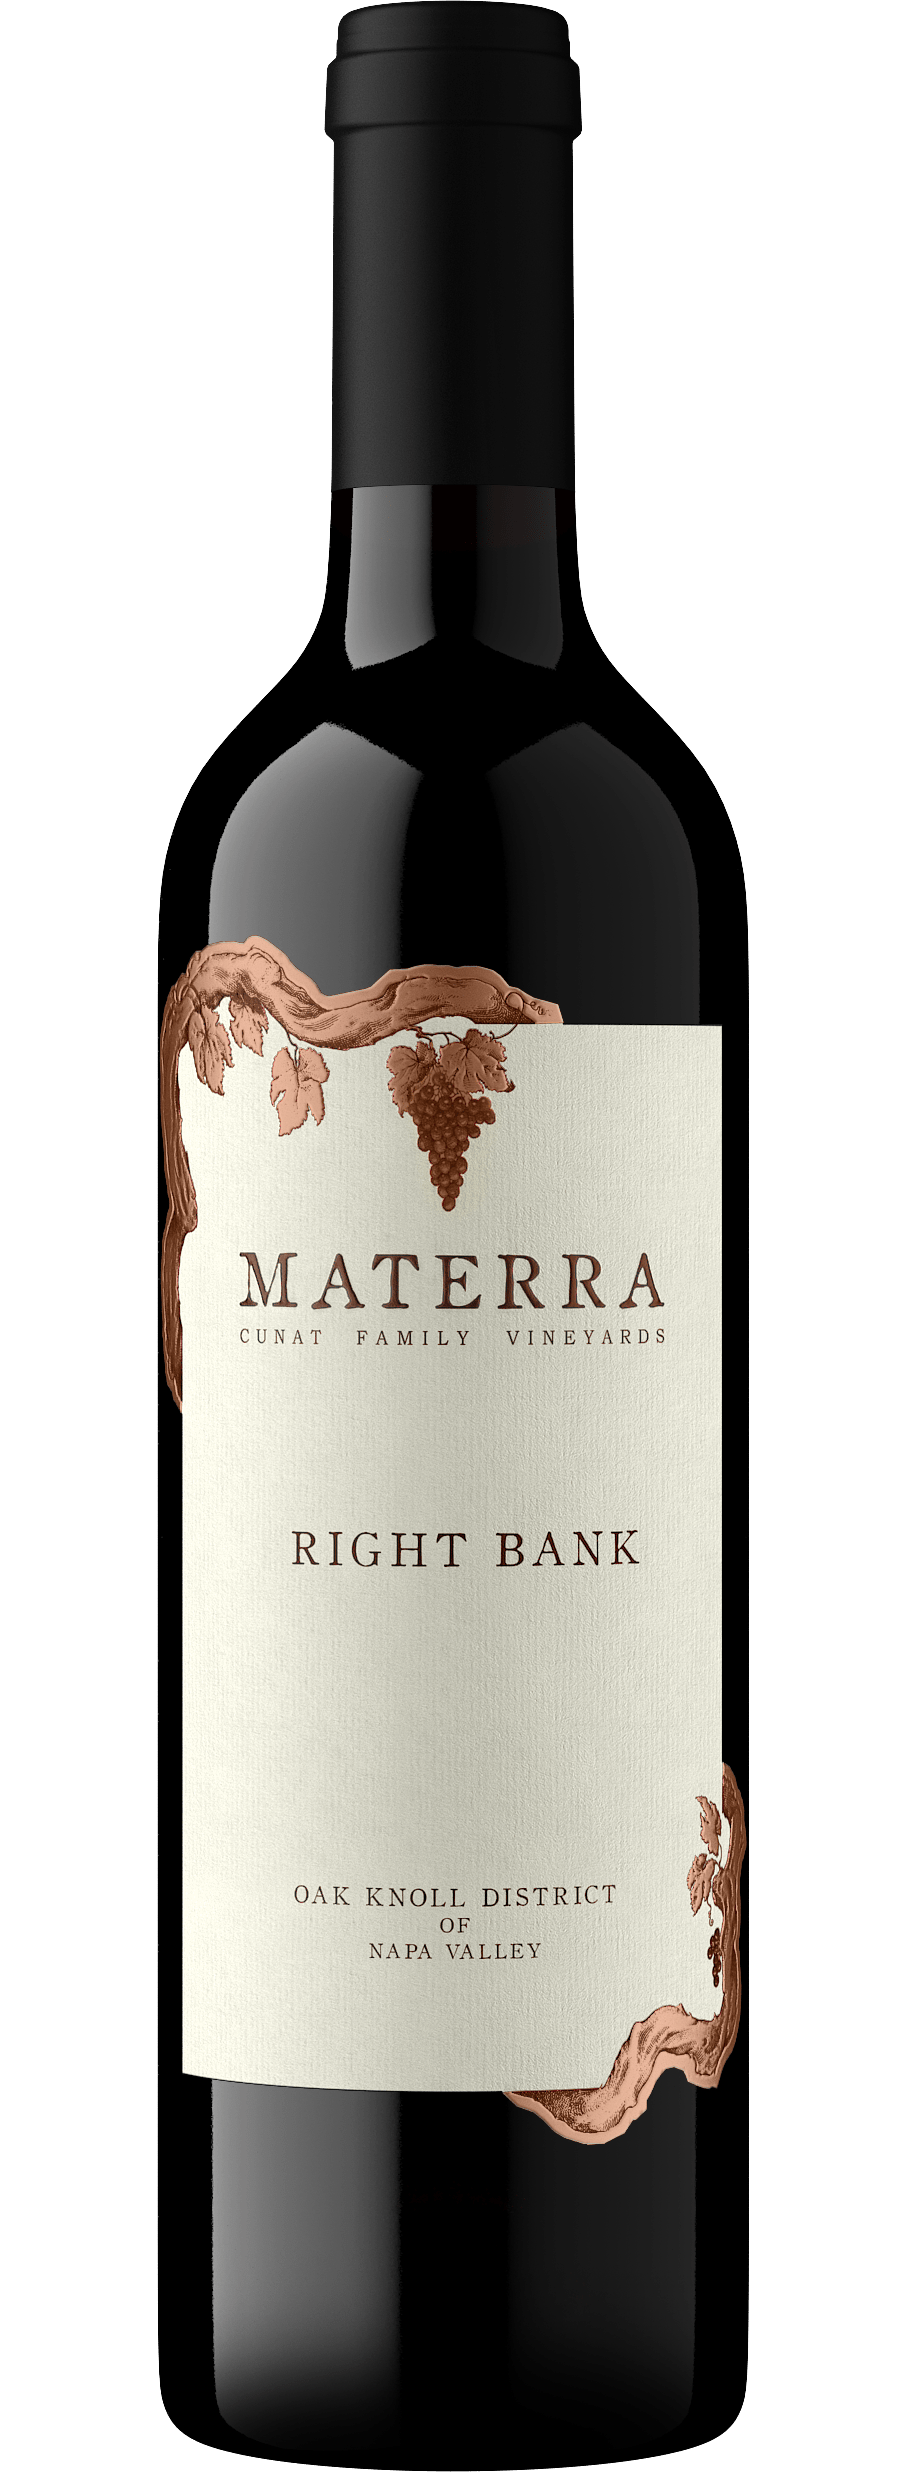 Materra Right Bank Merlot Blend